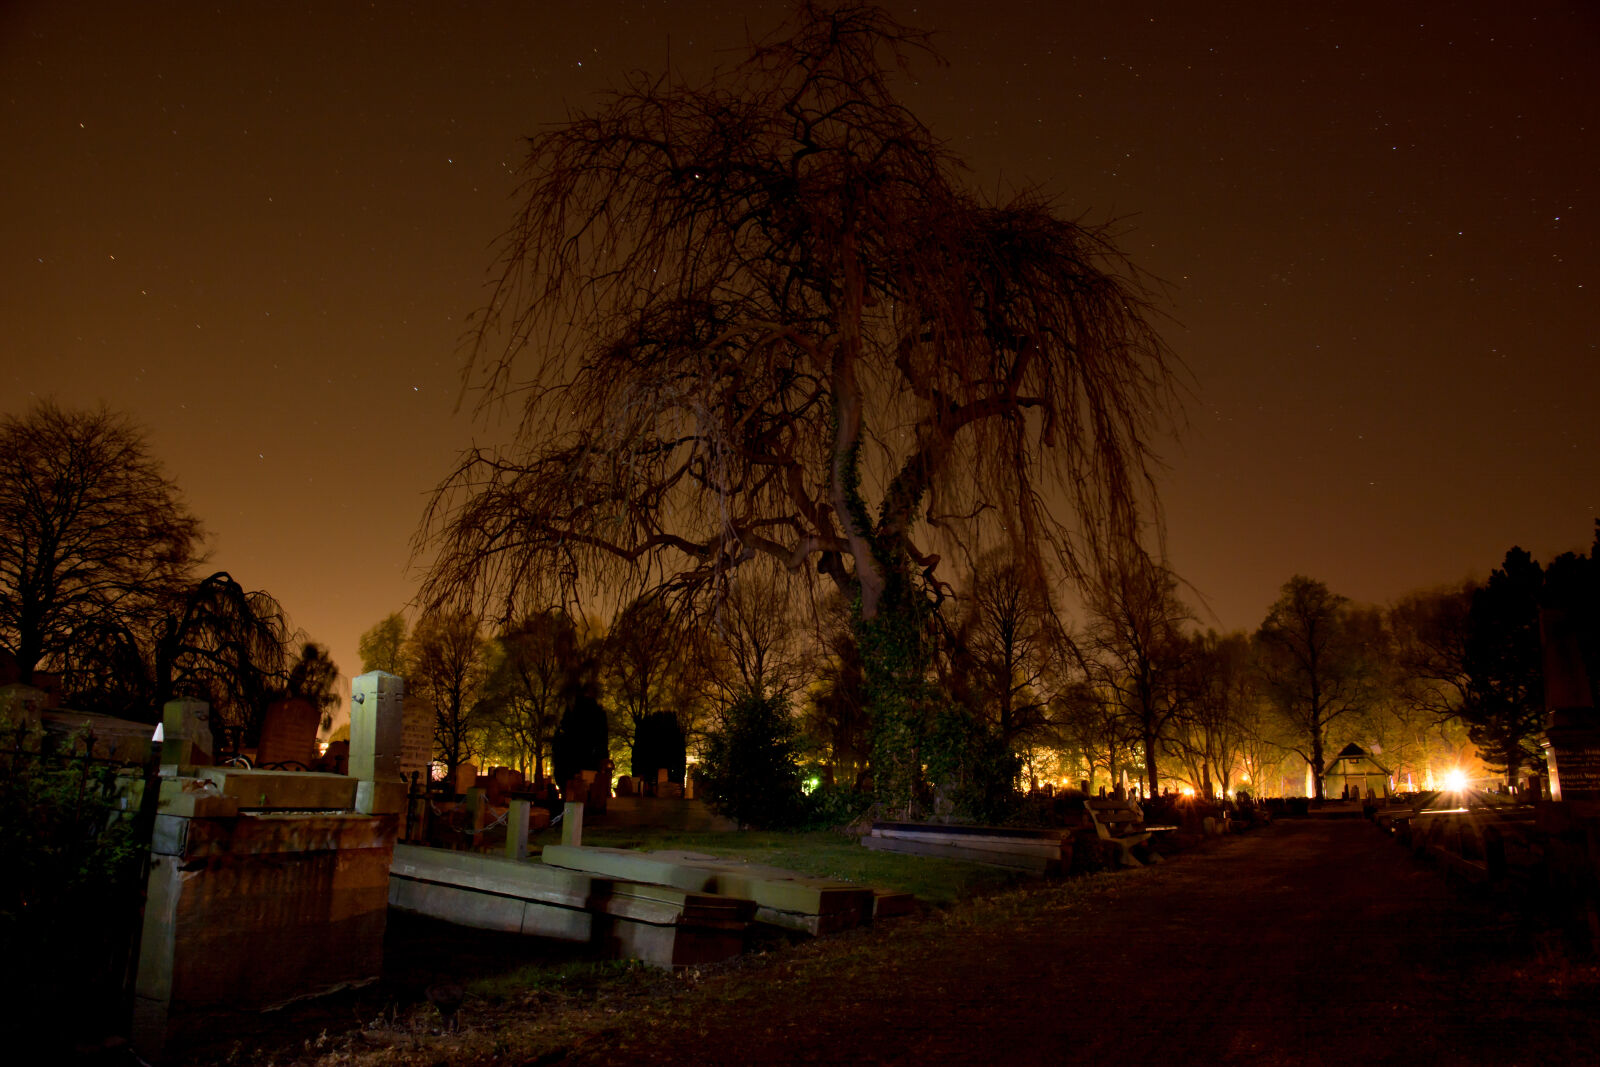 Nikon AF-S DX Nikkor 16-85mm F3.5-5.6G ED VR sample photo. Night, tree, spooky, sullen photography